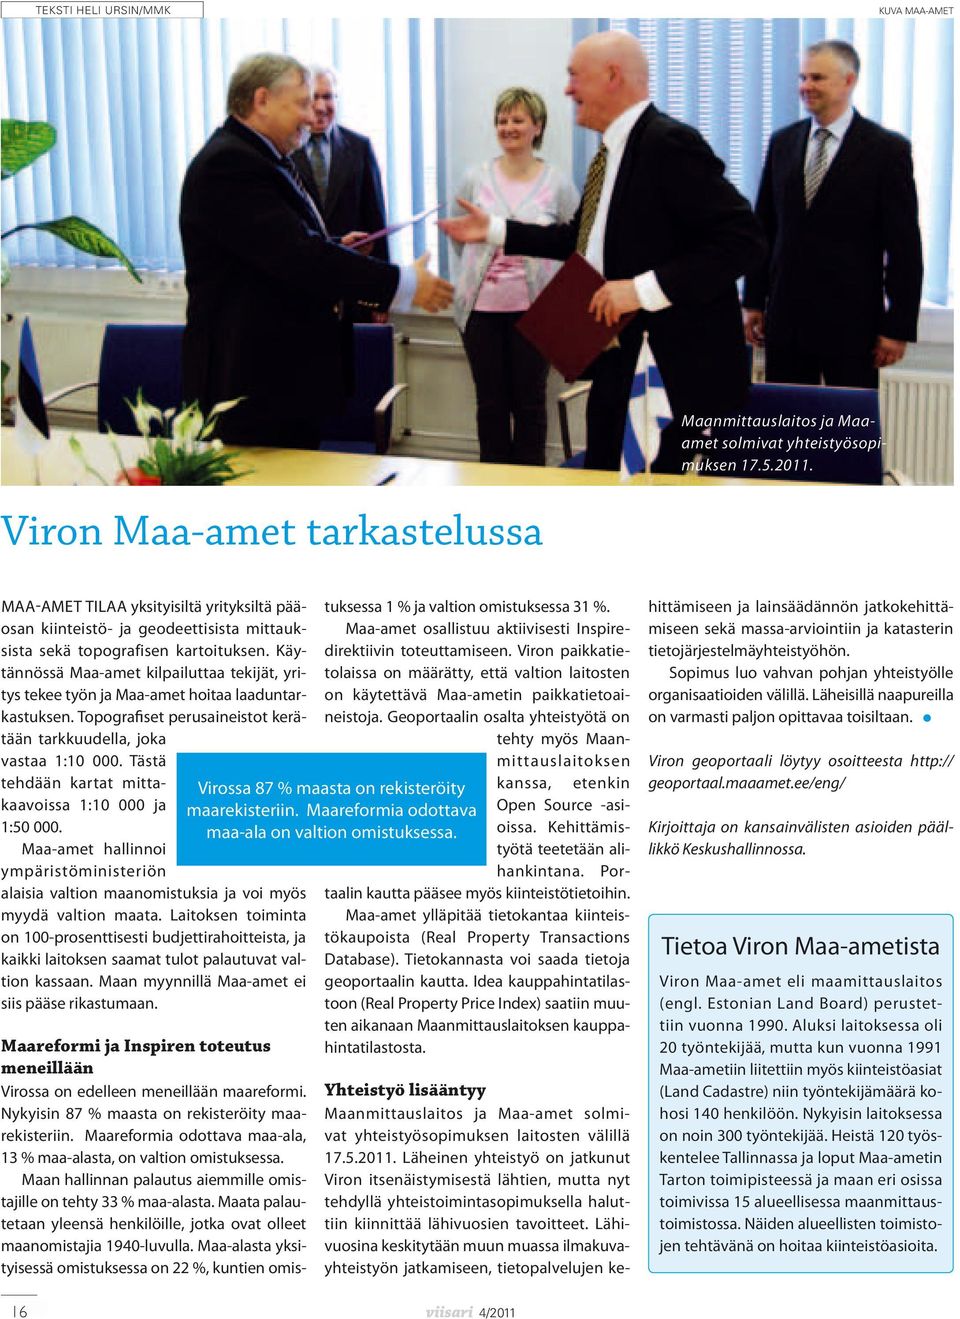 Viron Maa-amet tarkastelussa Maanmittauslaitos ja Maaamet solmivat yhteistyösopimuksen 17.5.2011.